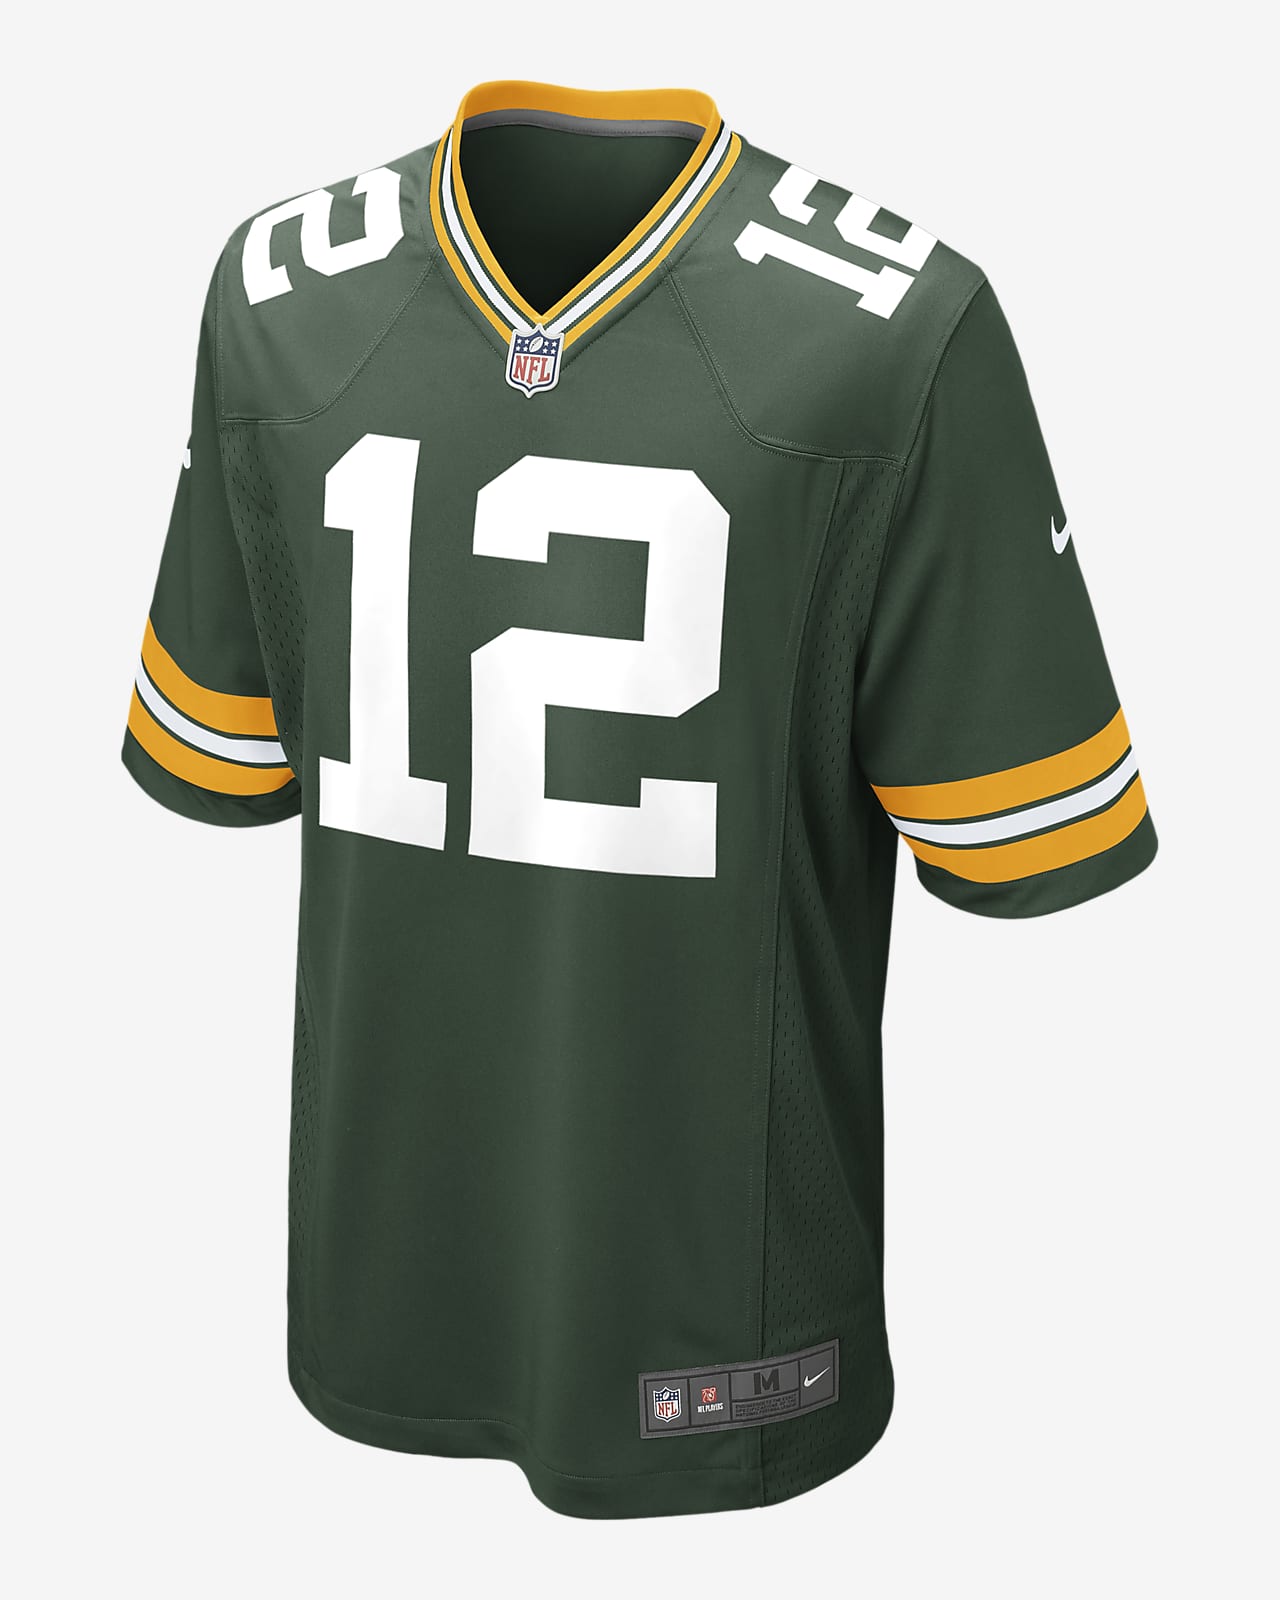 Męska koszulka meczowa do futbolu amerykańskiego NFL Green Bay Packers (Aaron Rodgers)